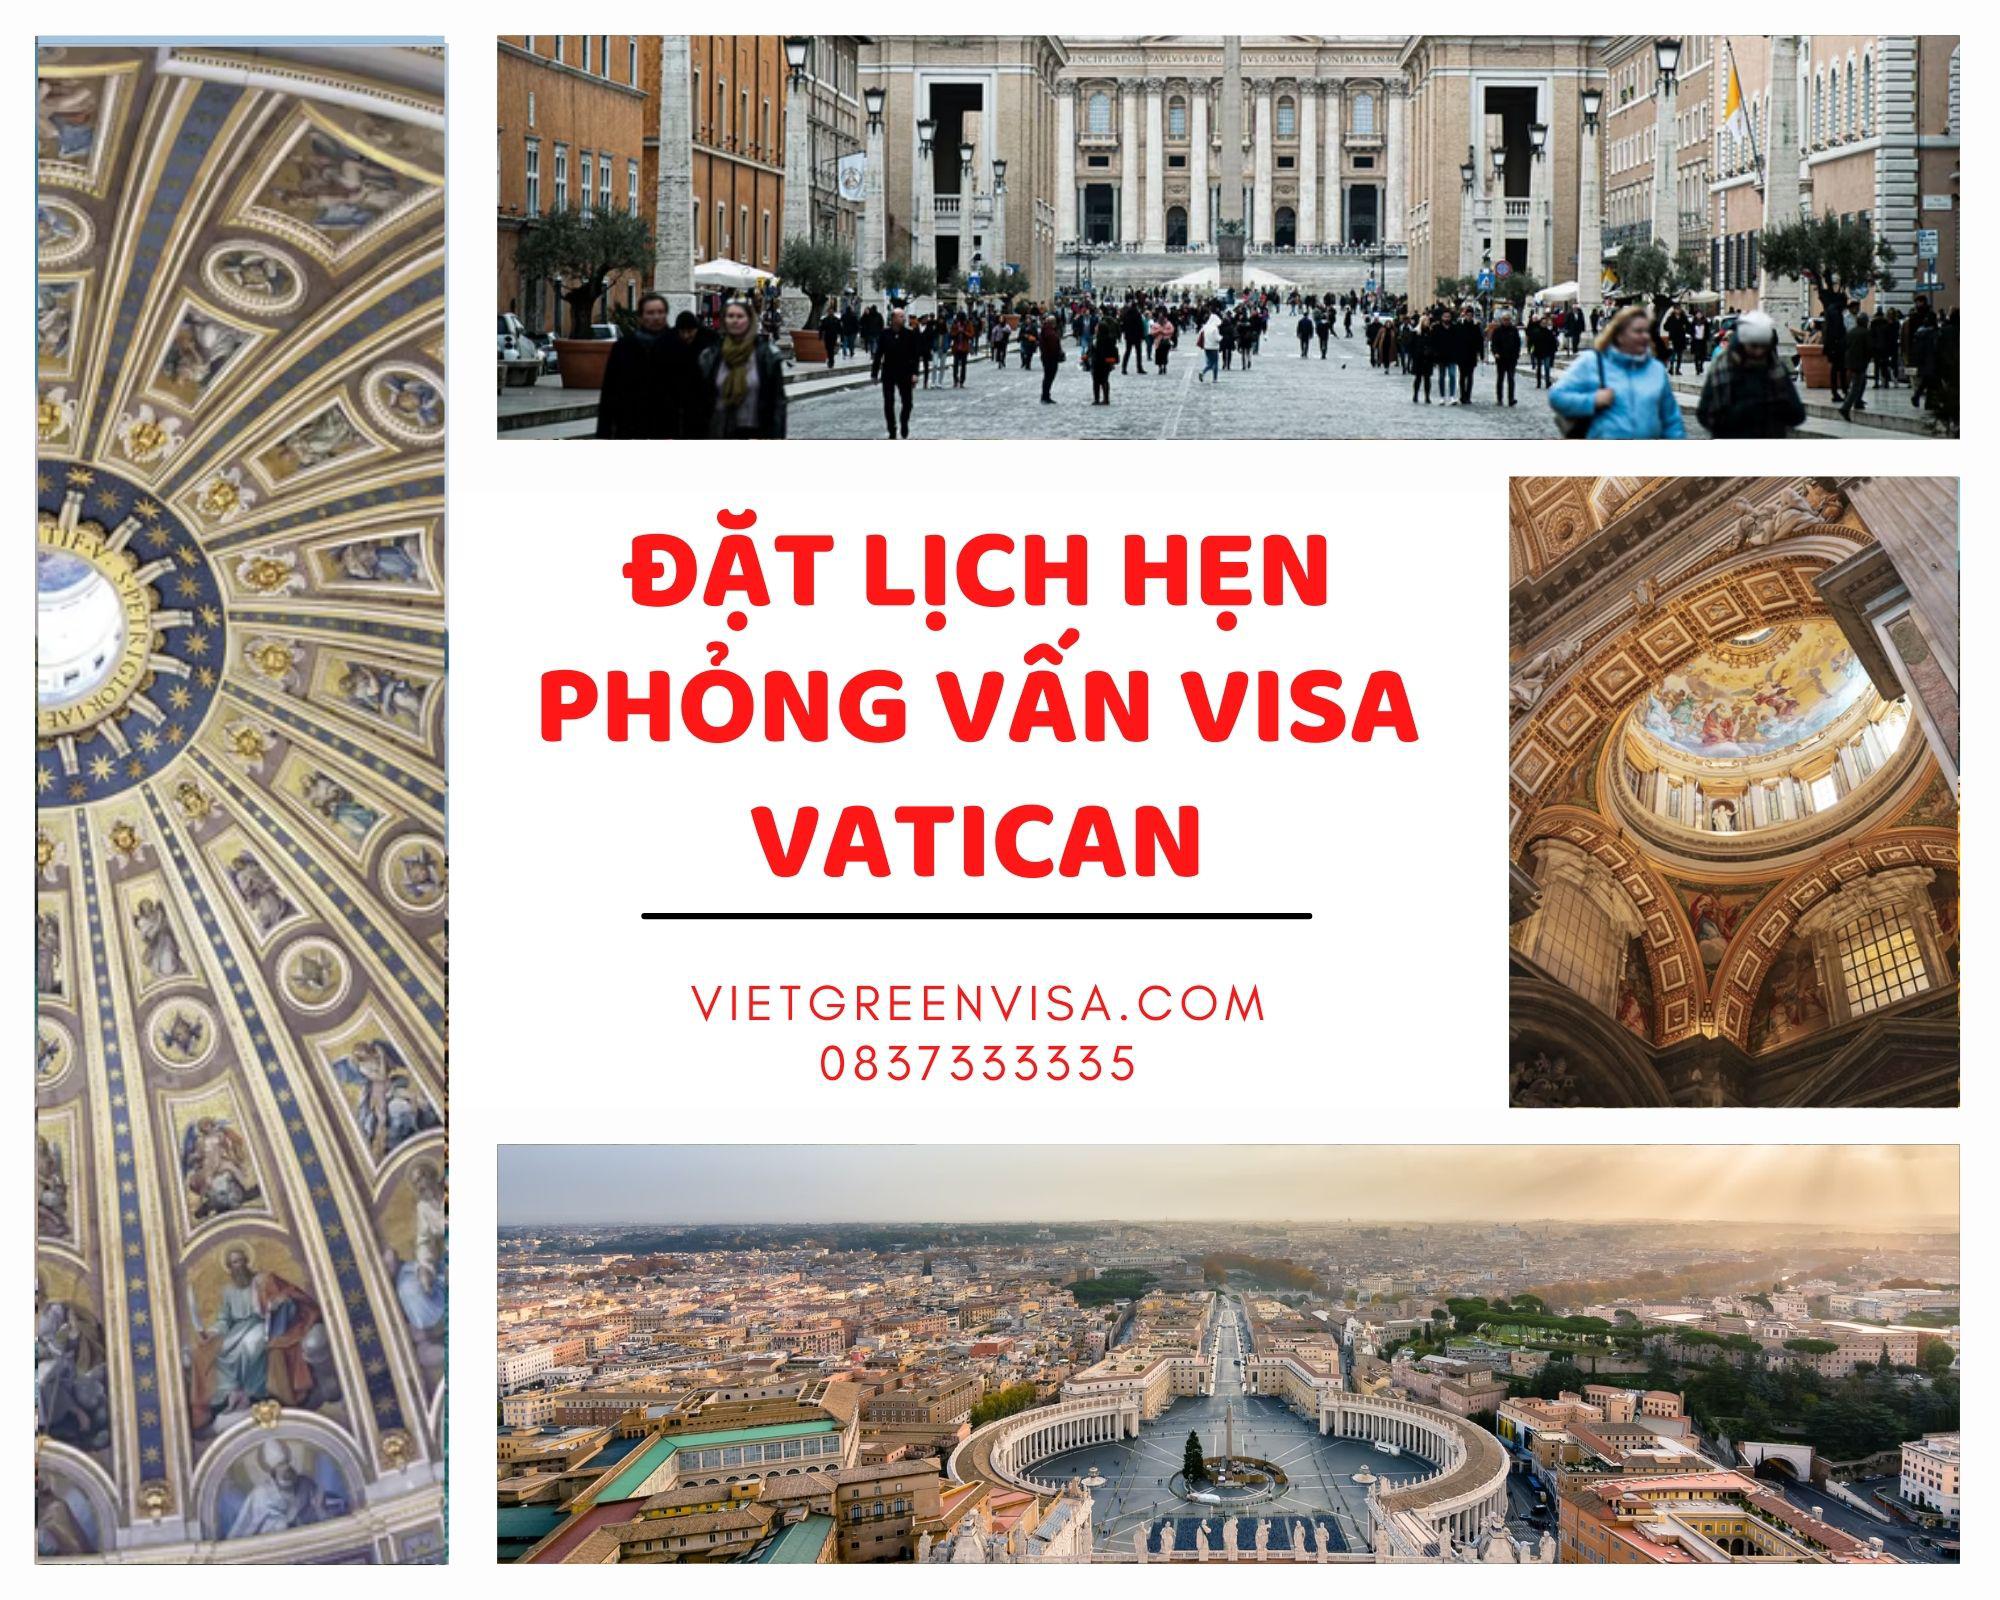 Viet Green Visa, đặt lịch hẹn xin visa Vantican, visa Vantican